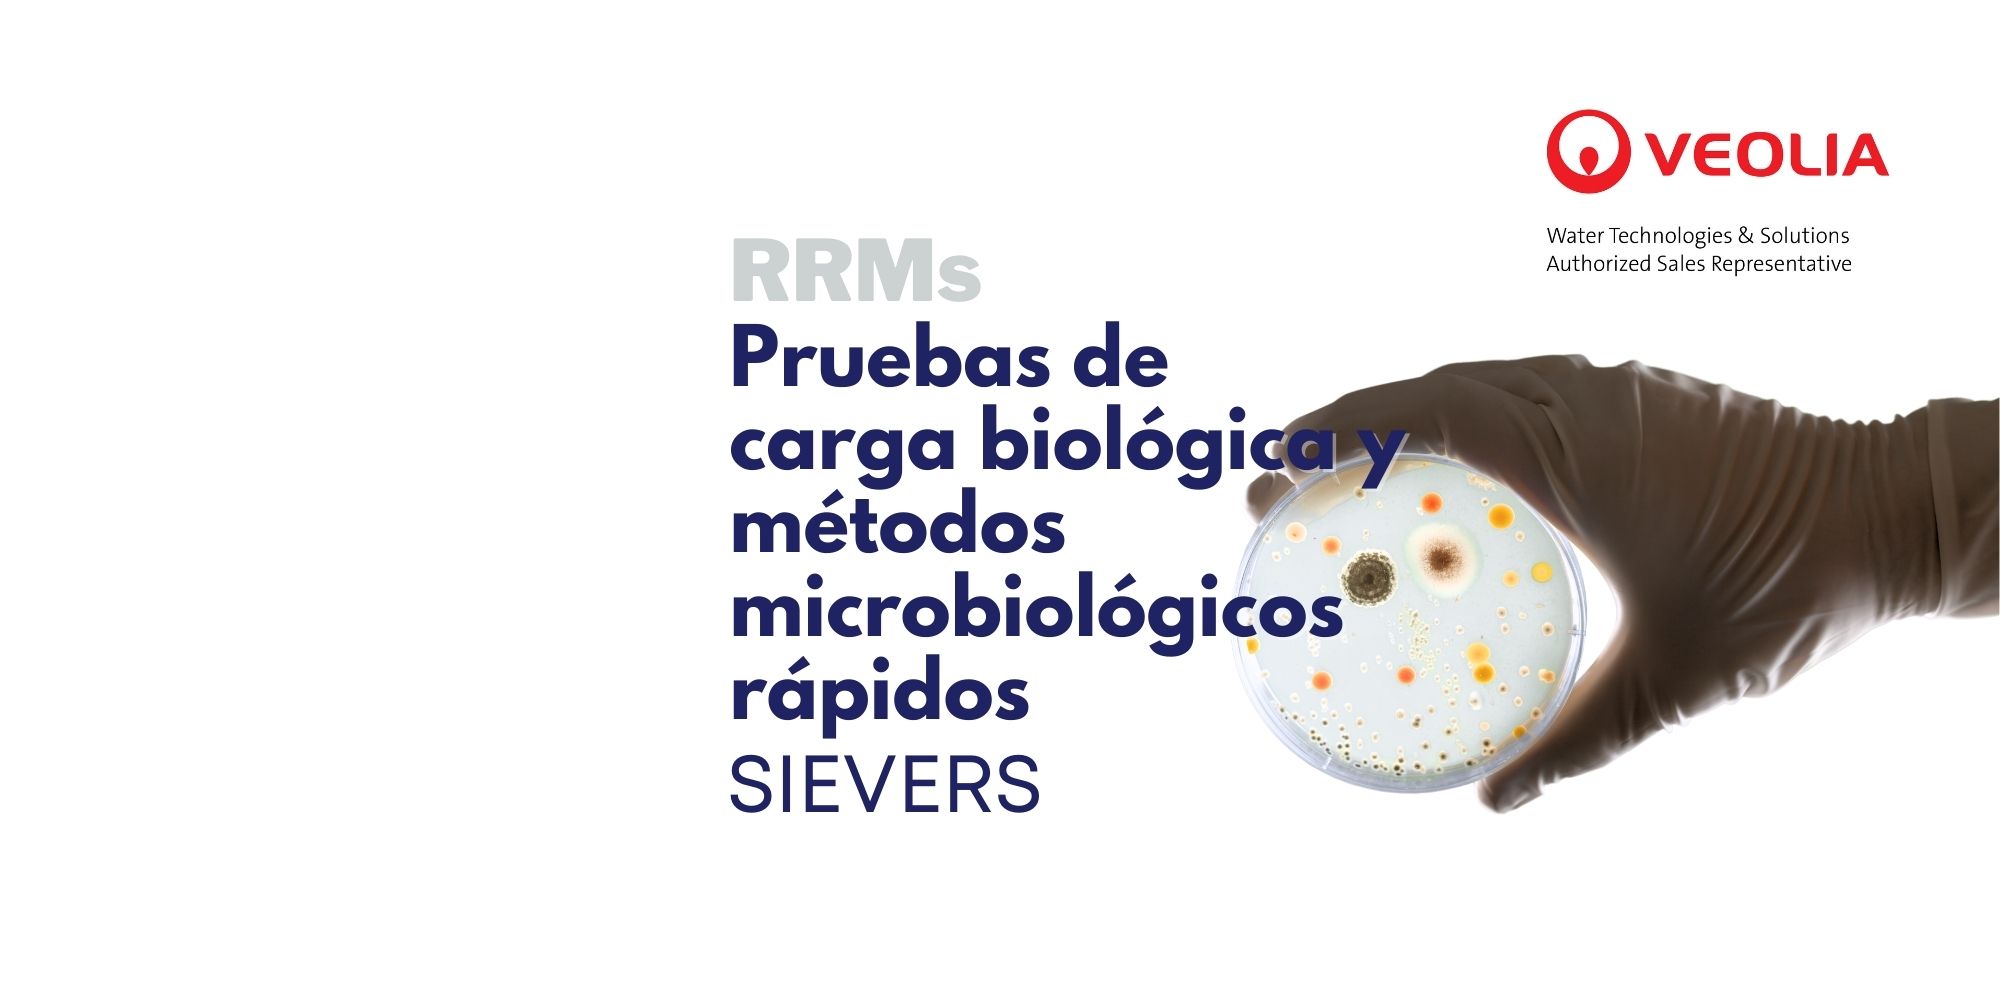 Pruebas de carga biológica y métodos rápidos de microbiología